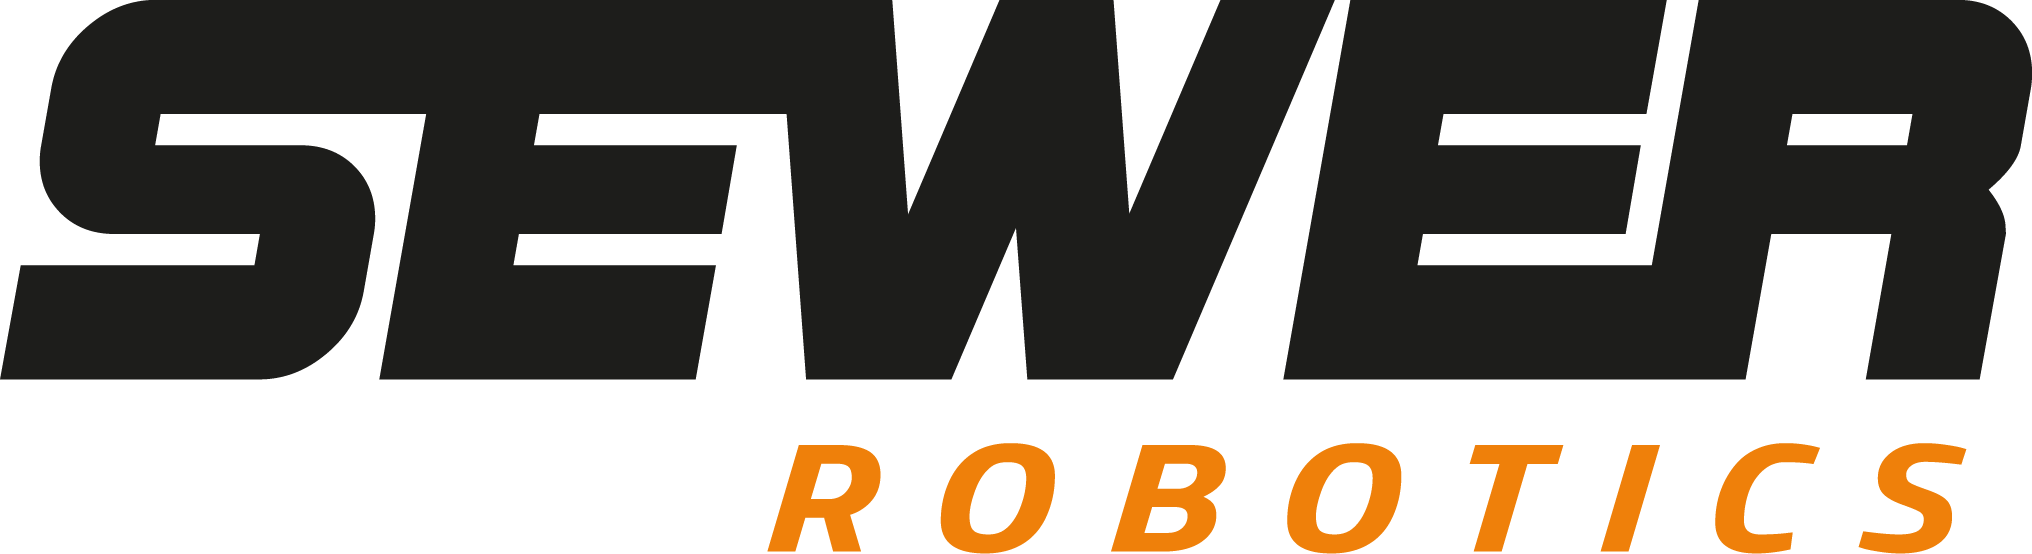 Sewer Robotics